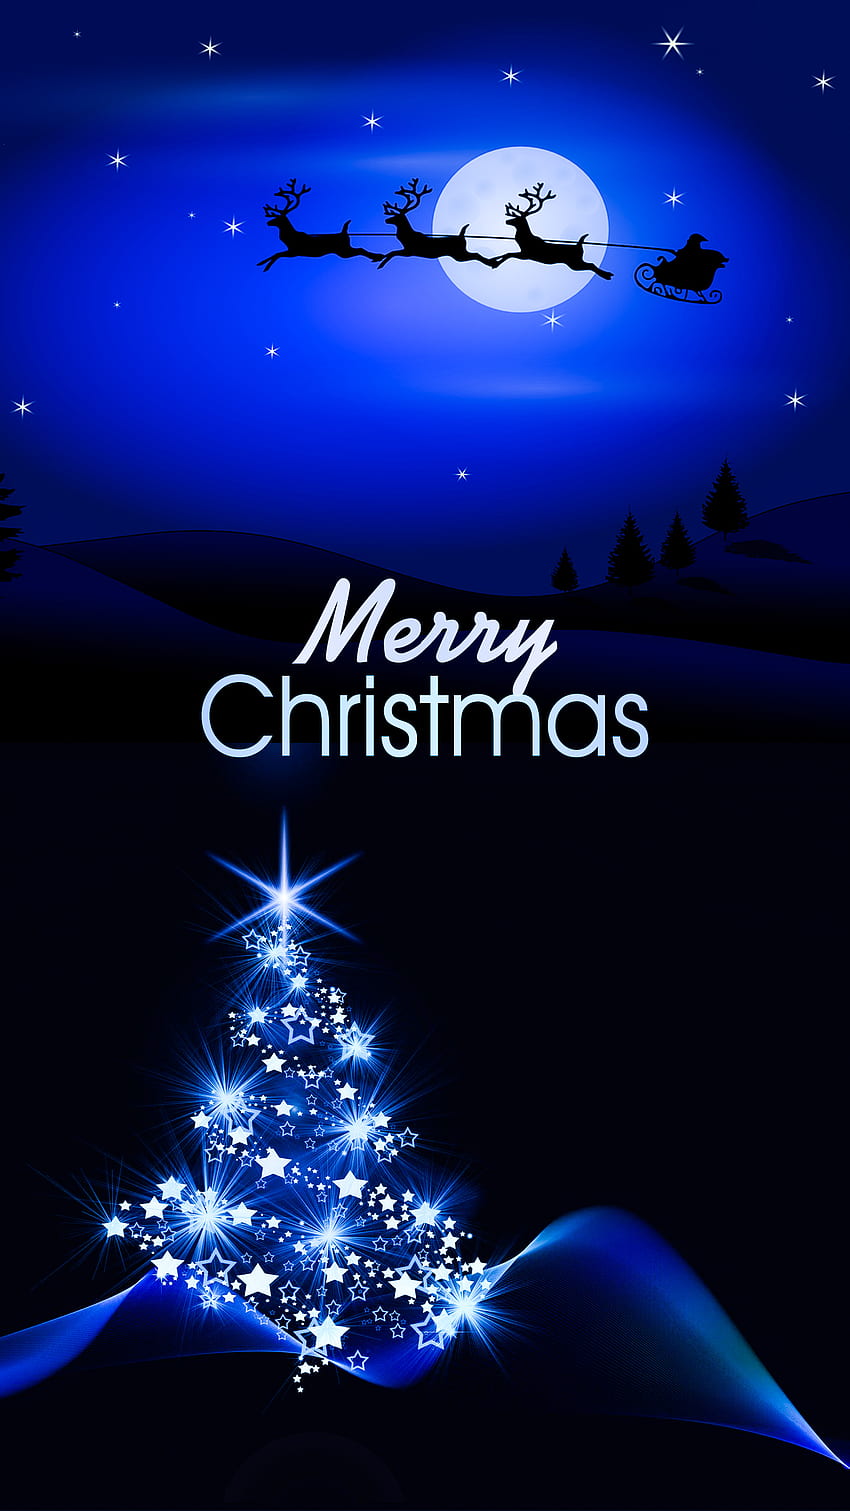 Merry Christmas, Merry Christmas santa, christmas tree, night ...